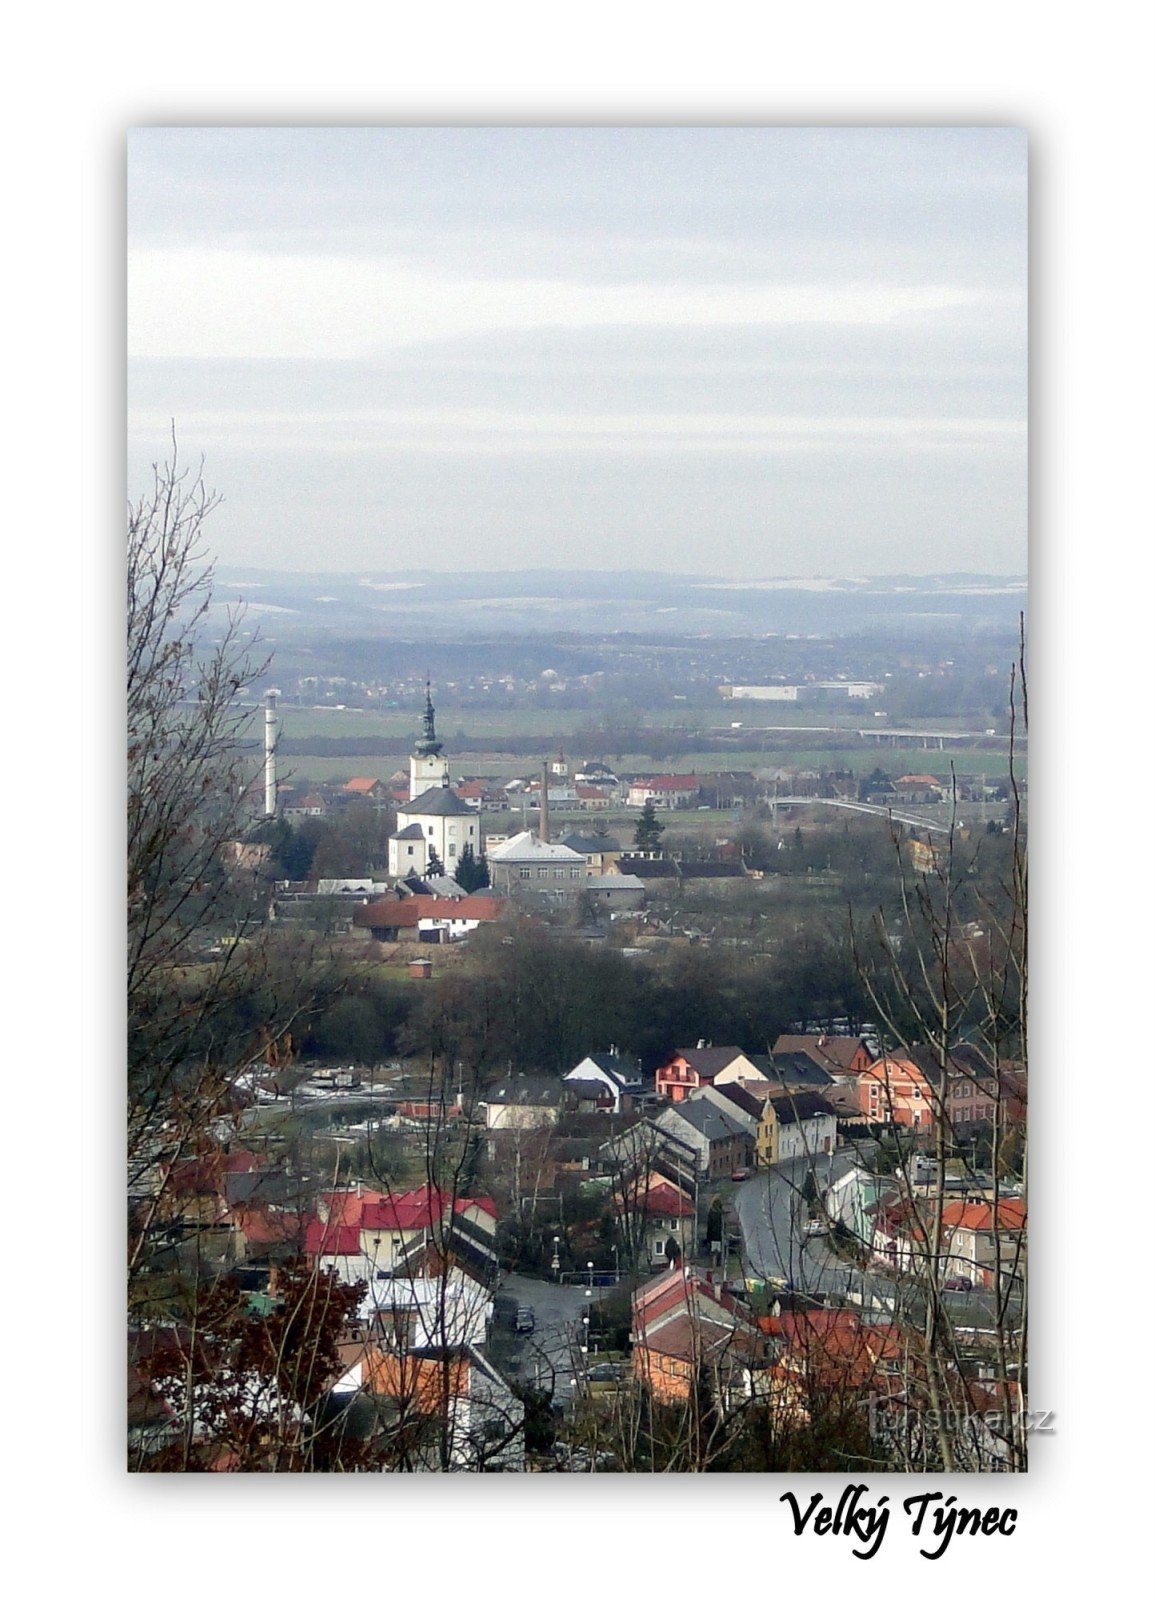 θέα στο Velký Týnec από το μνημείο